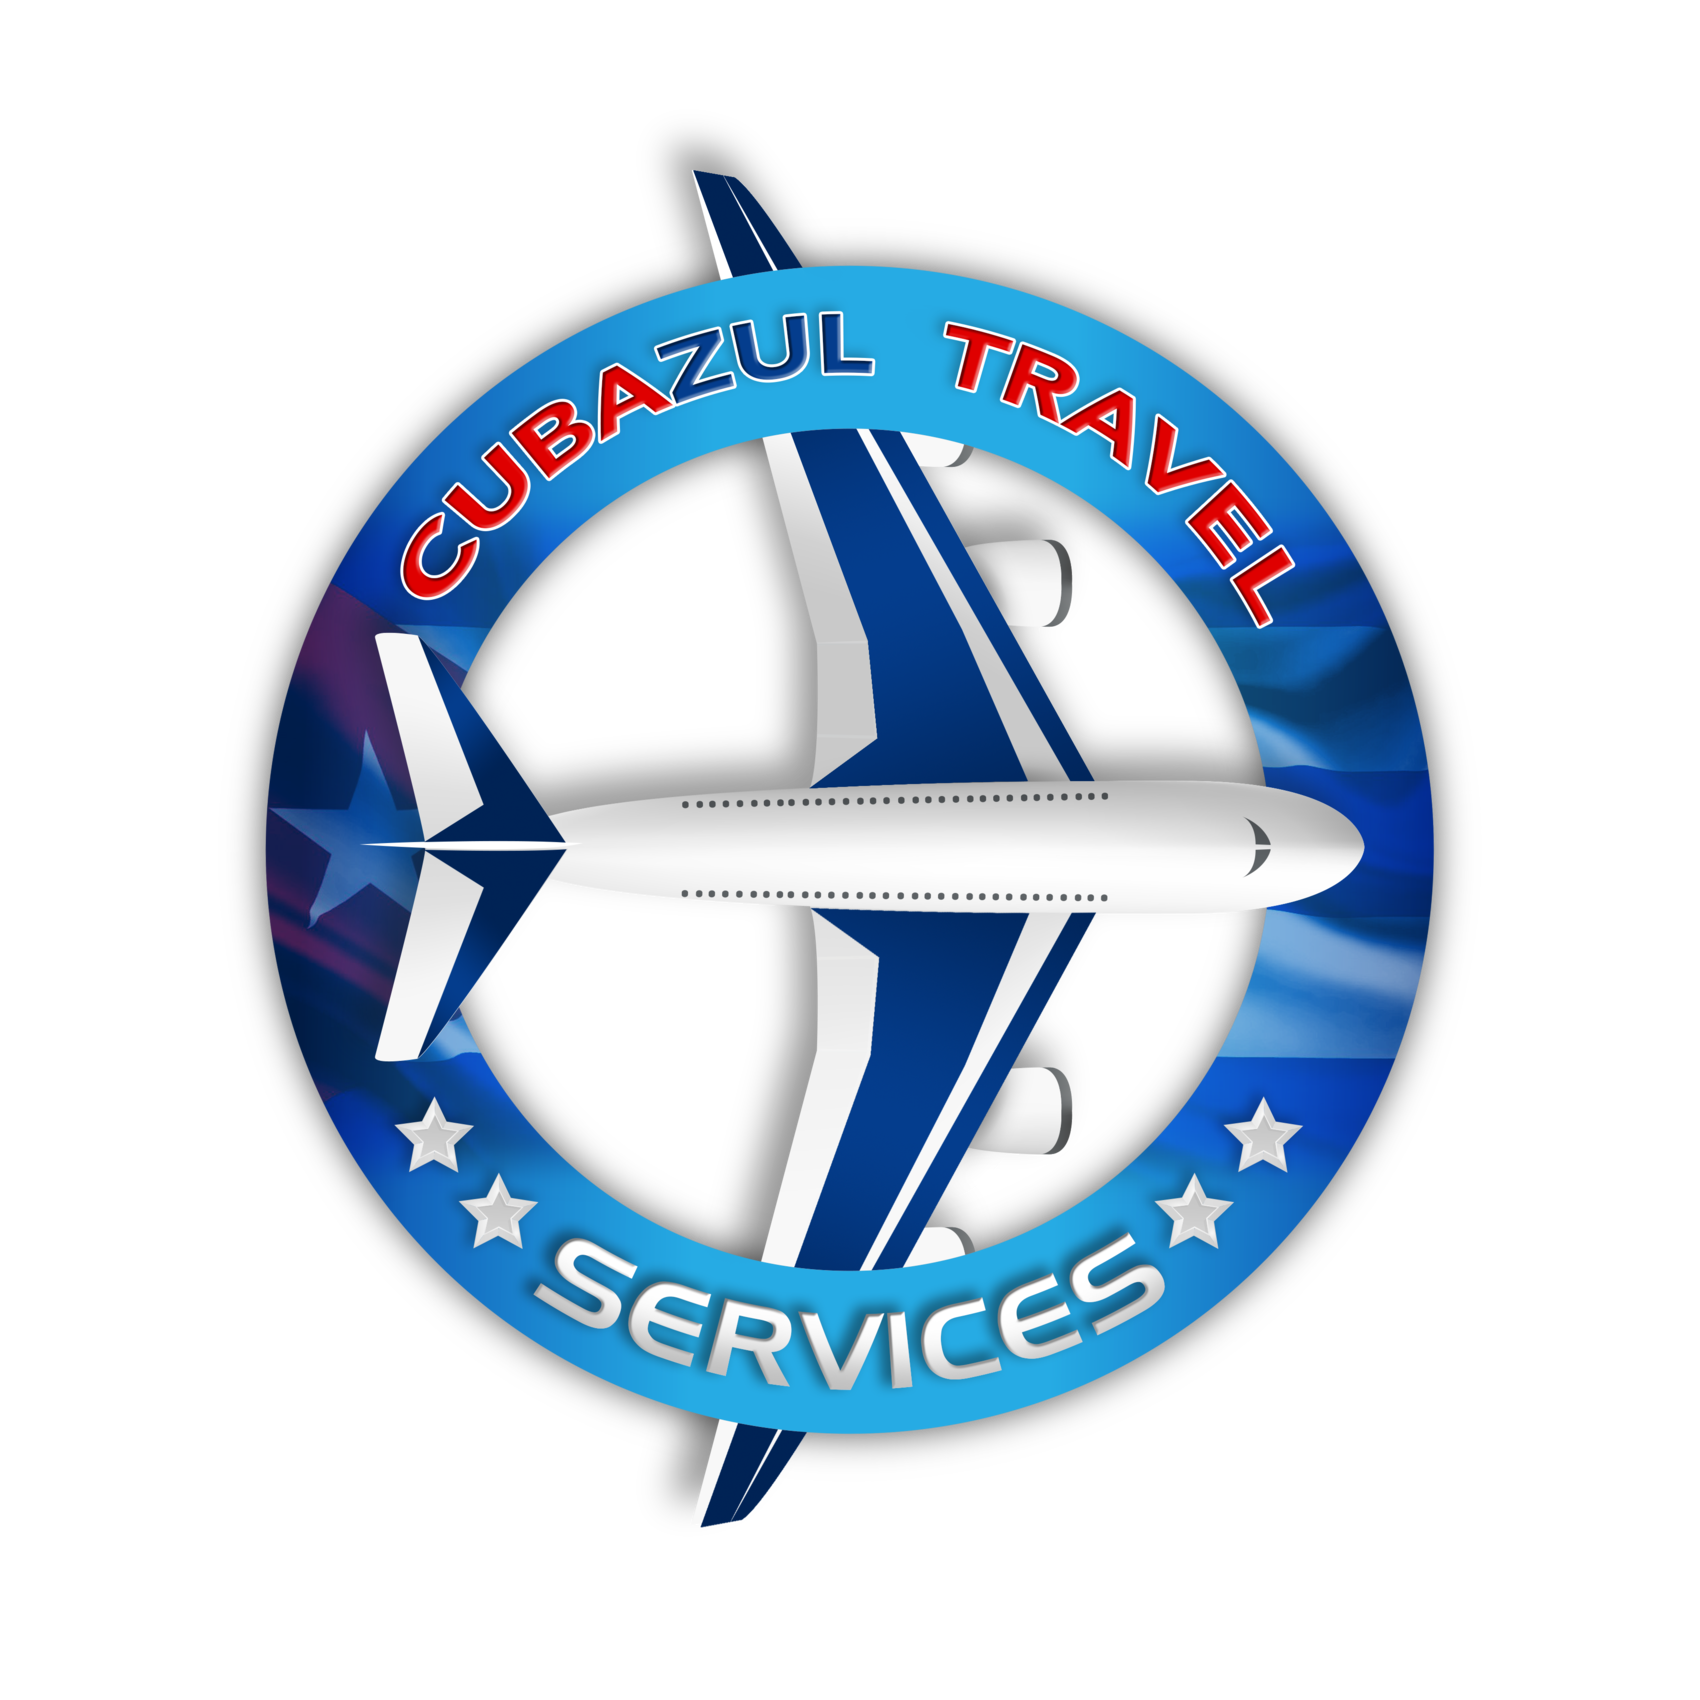 Cubazul Travel Services